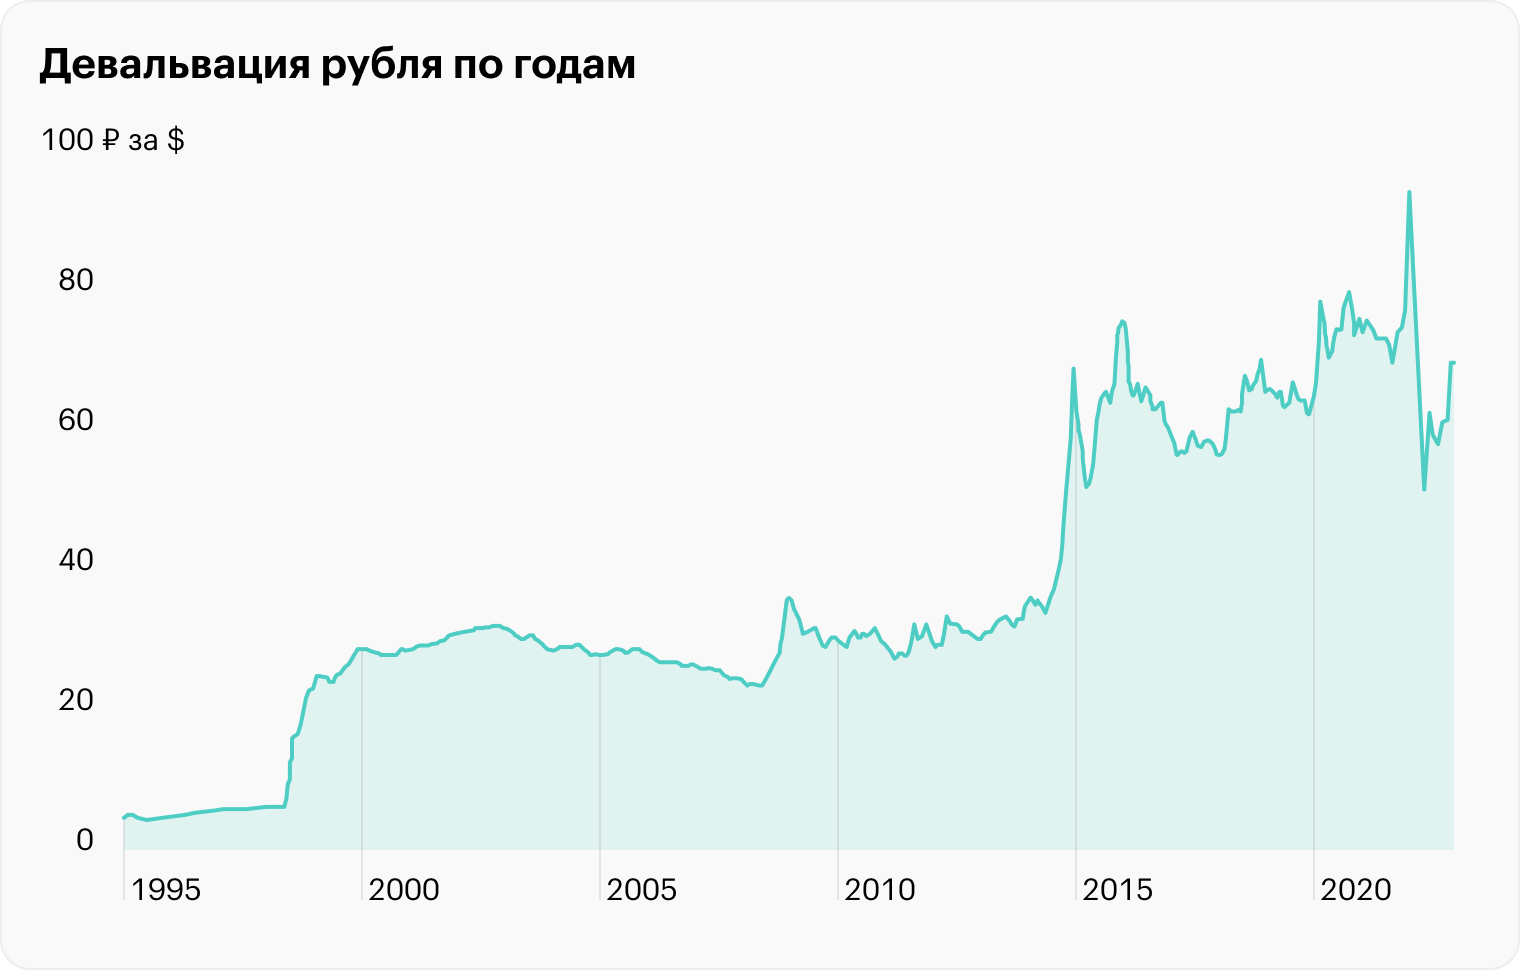 Девальвация рубля с конца 1994 по февраль 2023 года. Источник: Investing